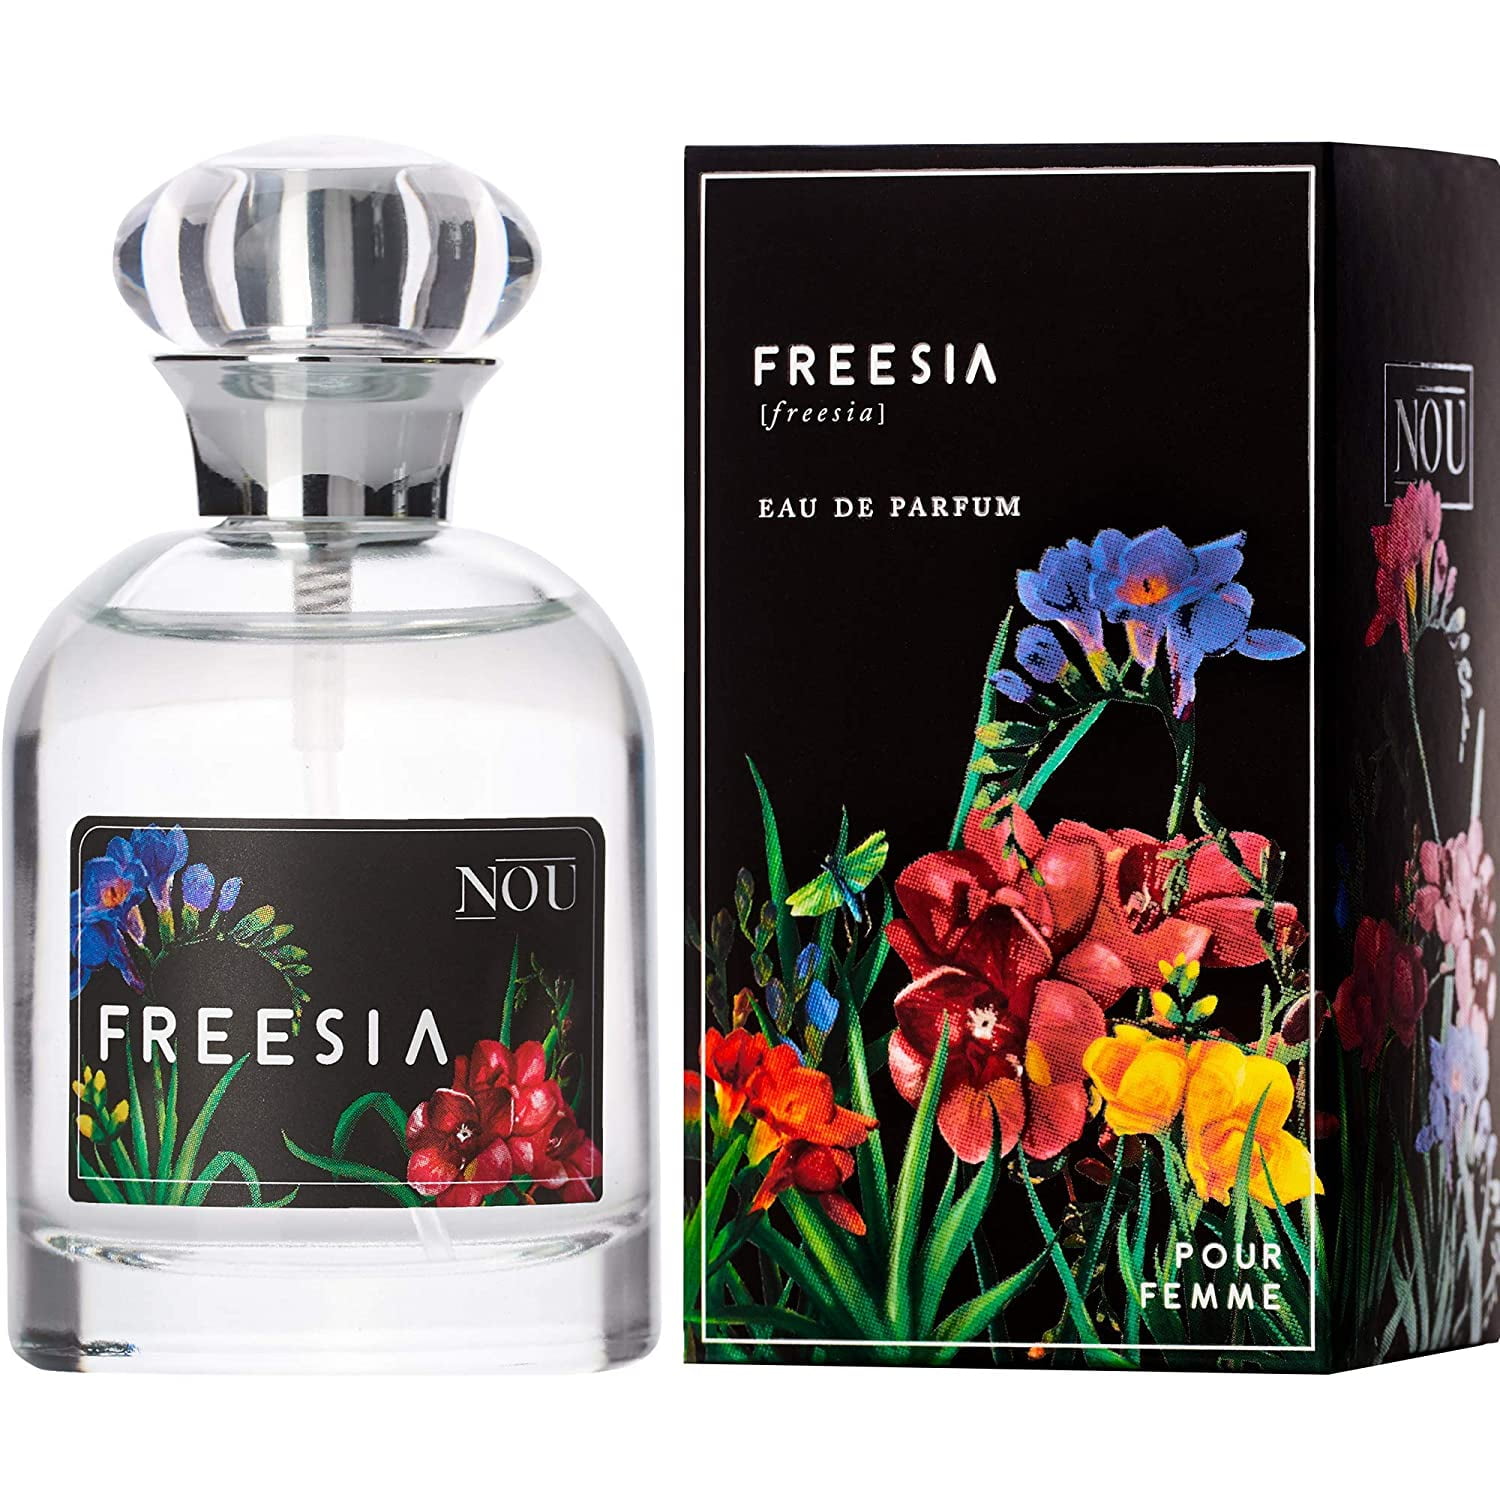 NOU Freesia Perfume for Women – 1.7 fl oz EDP